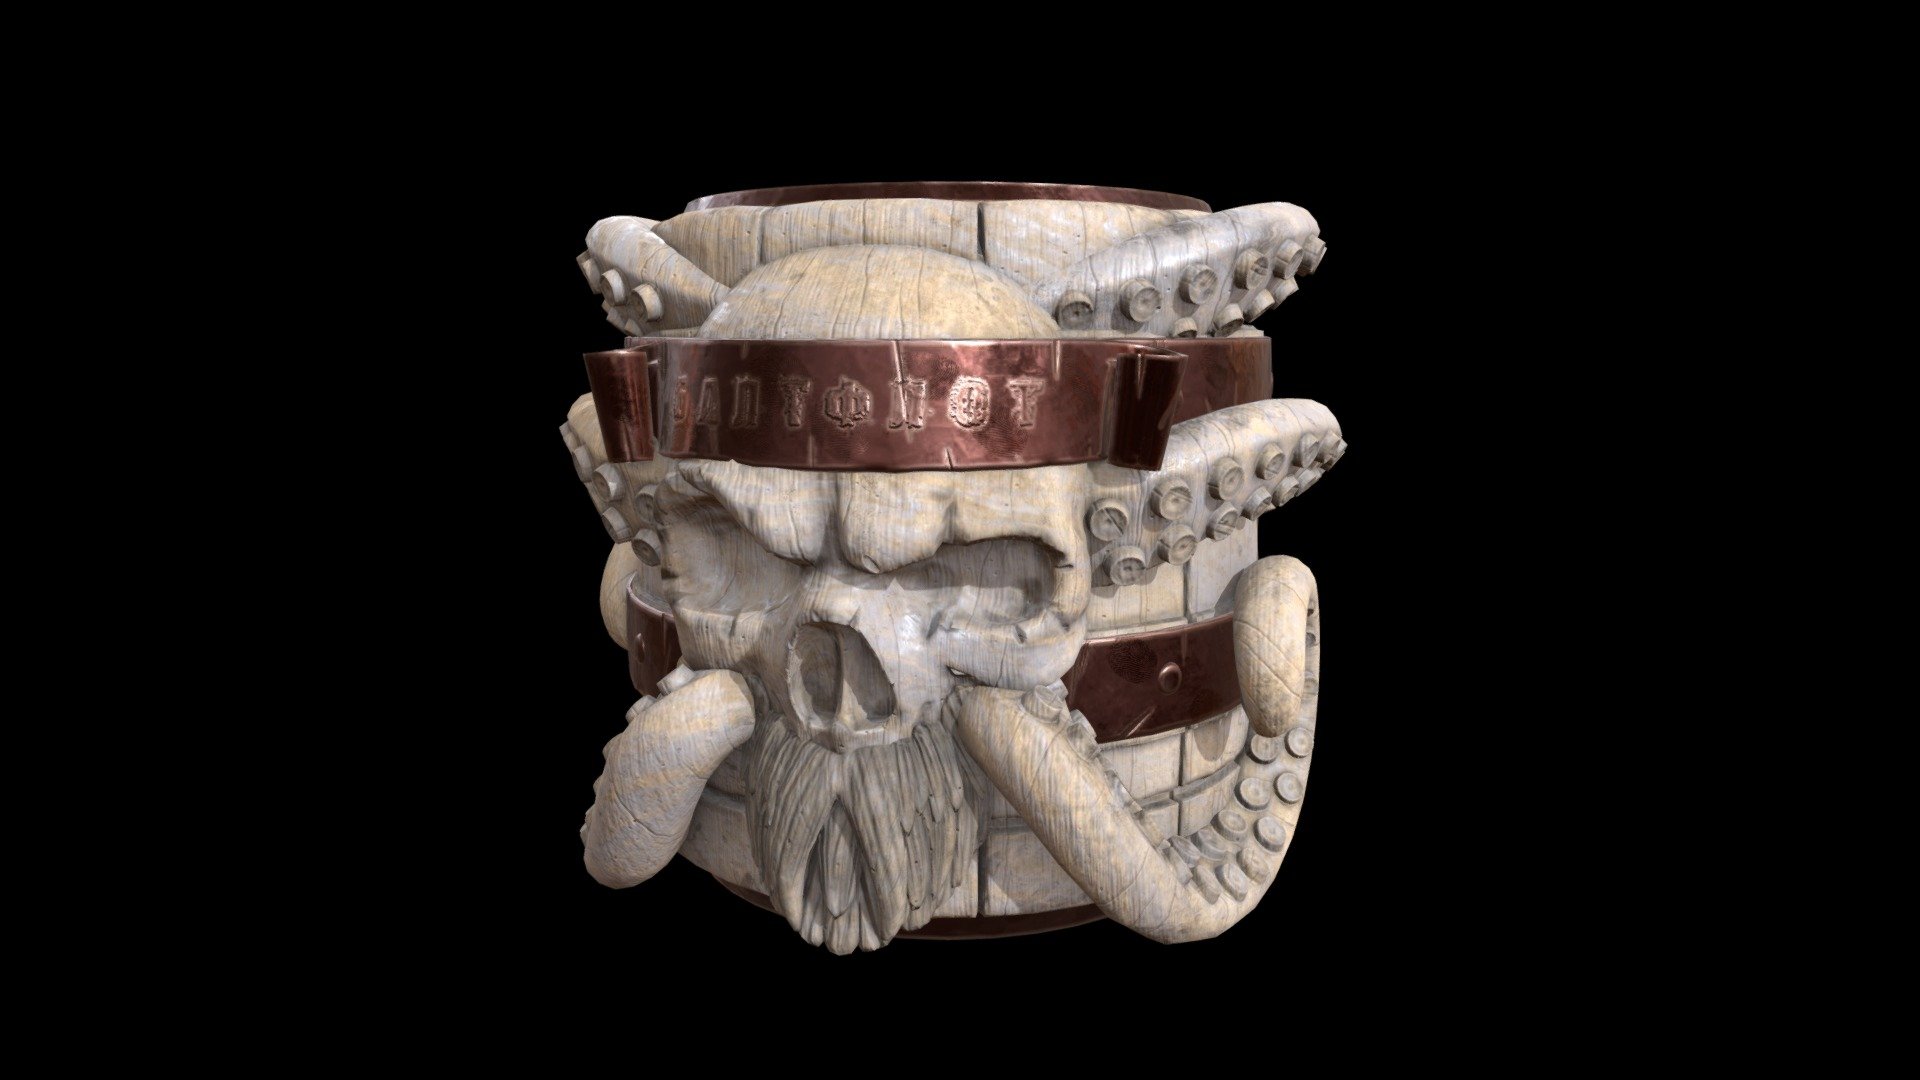 Mug_of_beer - 3D model by Krotovsky 3d model